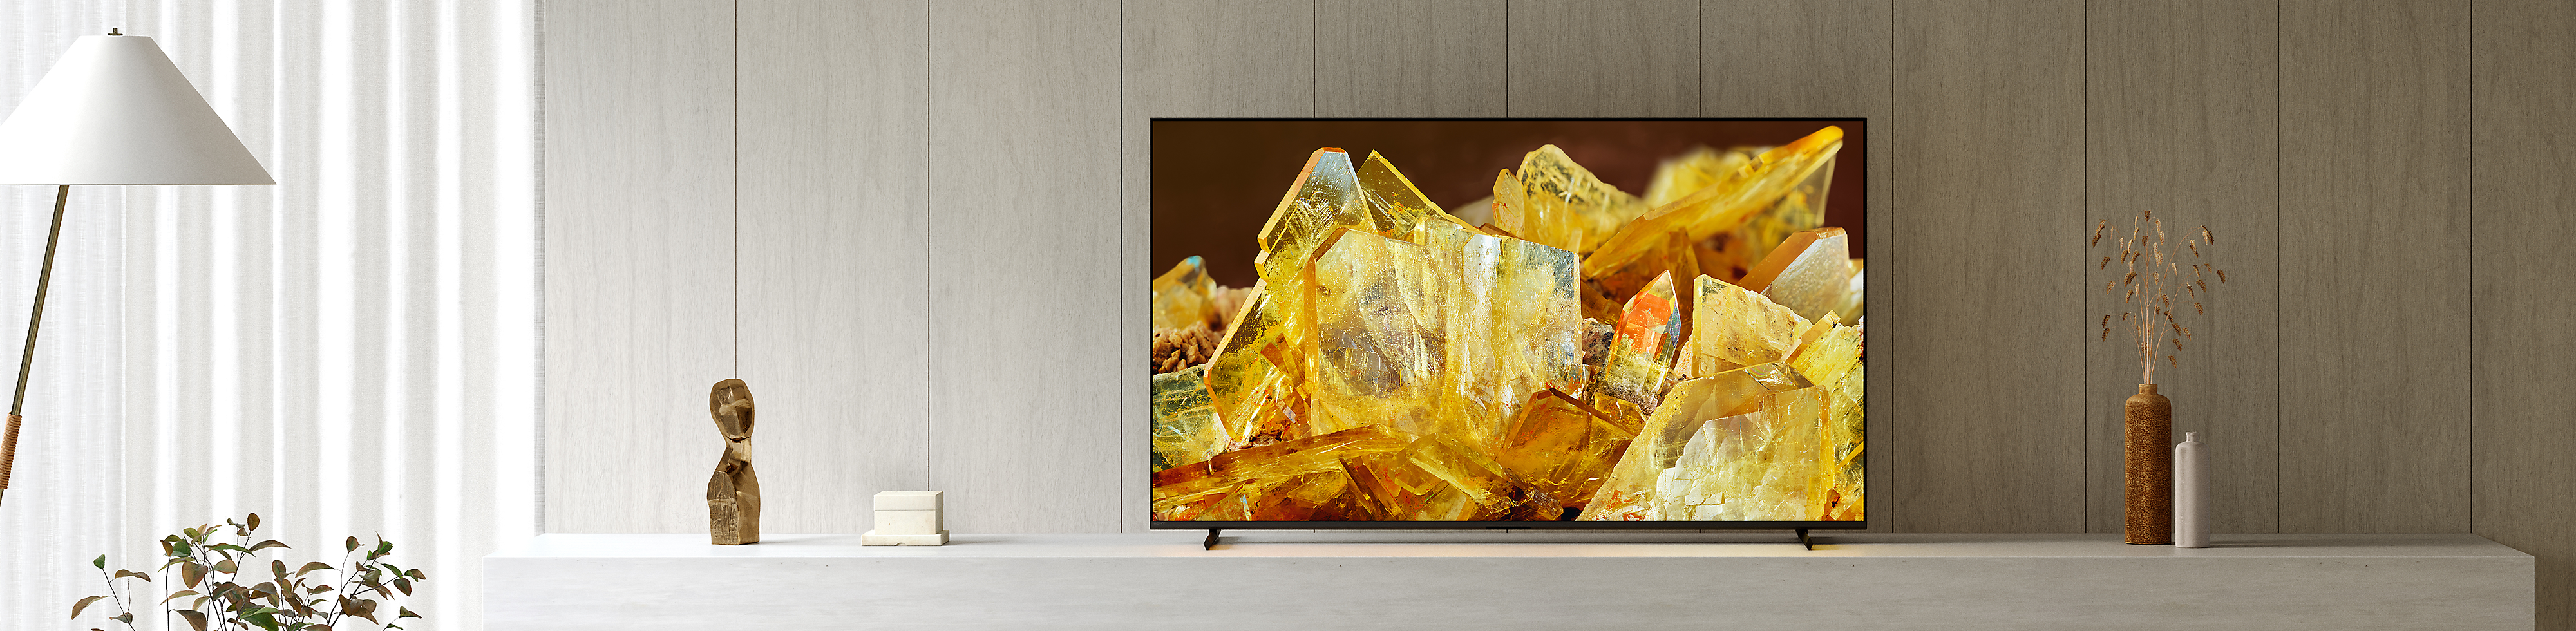 Televisor BRAVIA XR en una sala de estar, que muestra una imagen en primer plano de cristales de color ámbar